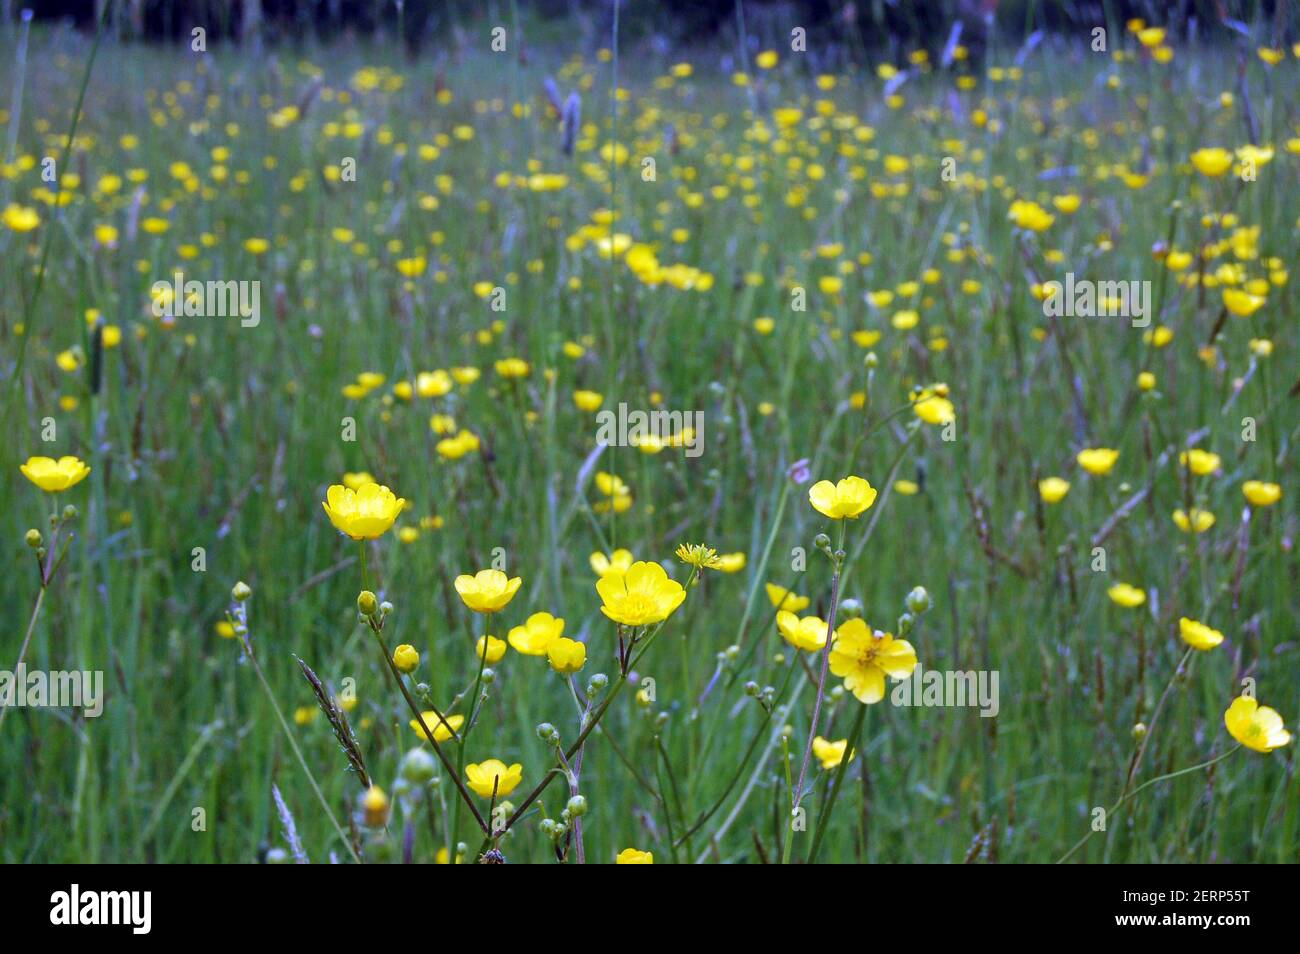 Leuchtend gelbe Butterblume blüht in einer Grasmädchenlandschaft. Konzentrieren Sie sich auf die Blumen im Vordergrund. Stockfoto